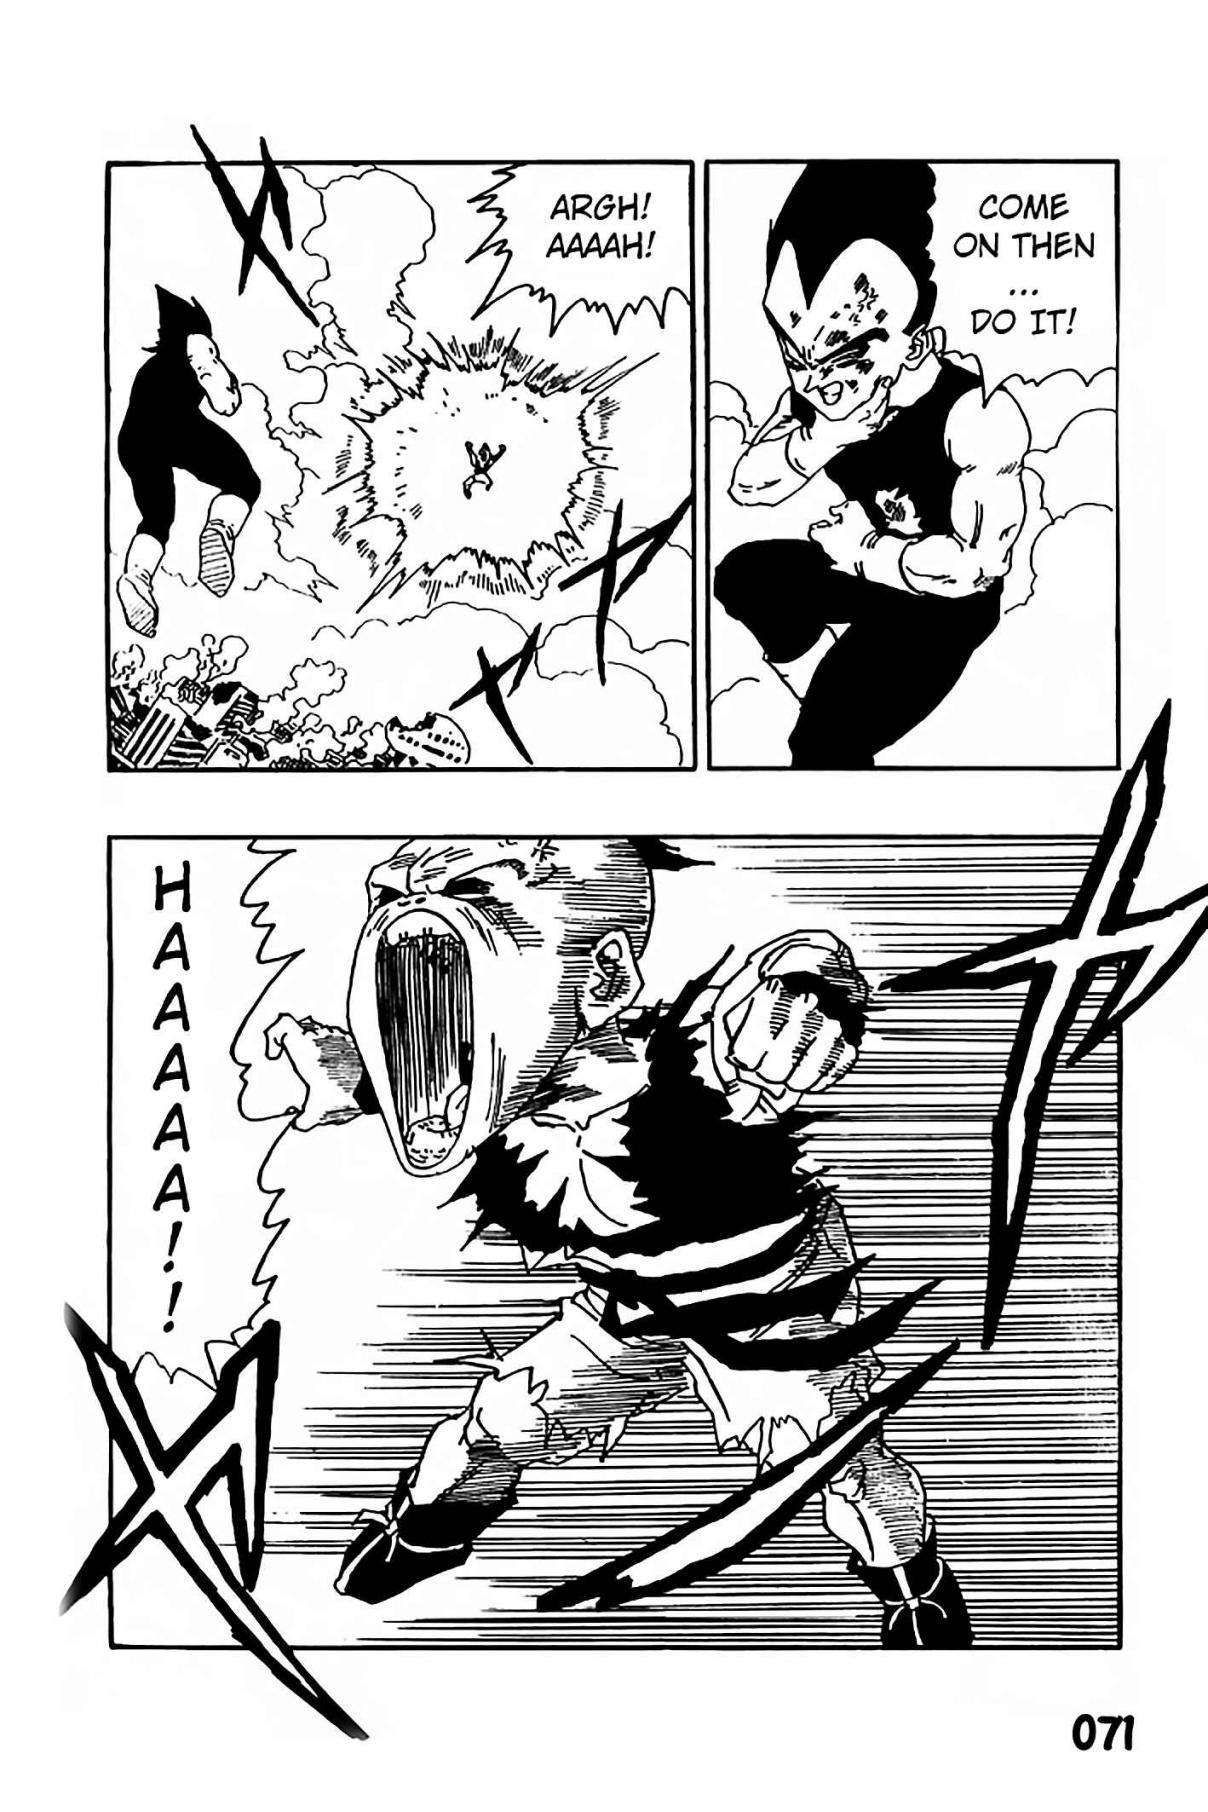 Dragon Ball Zeroverse (Doujinshi) Vol. 2 Majin Buu Emerges